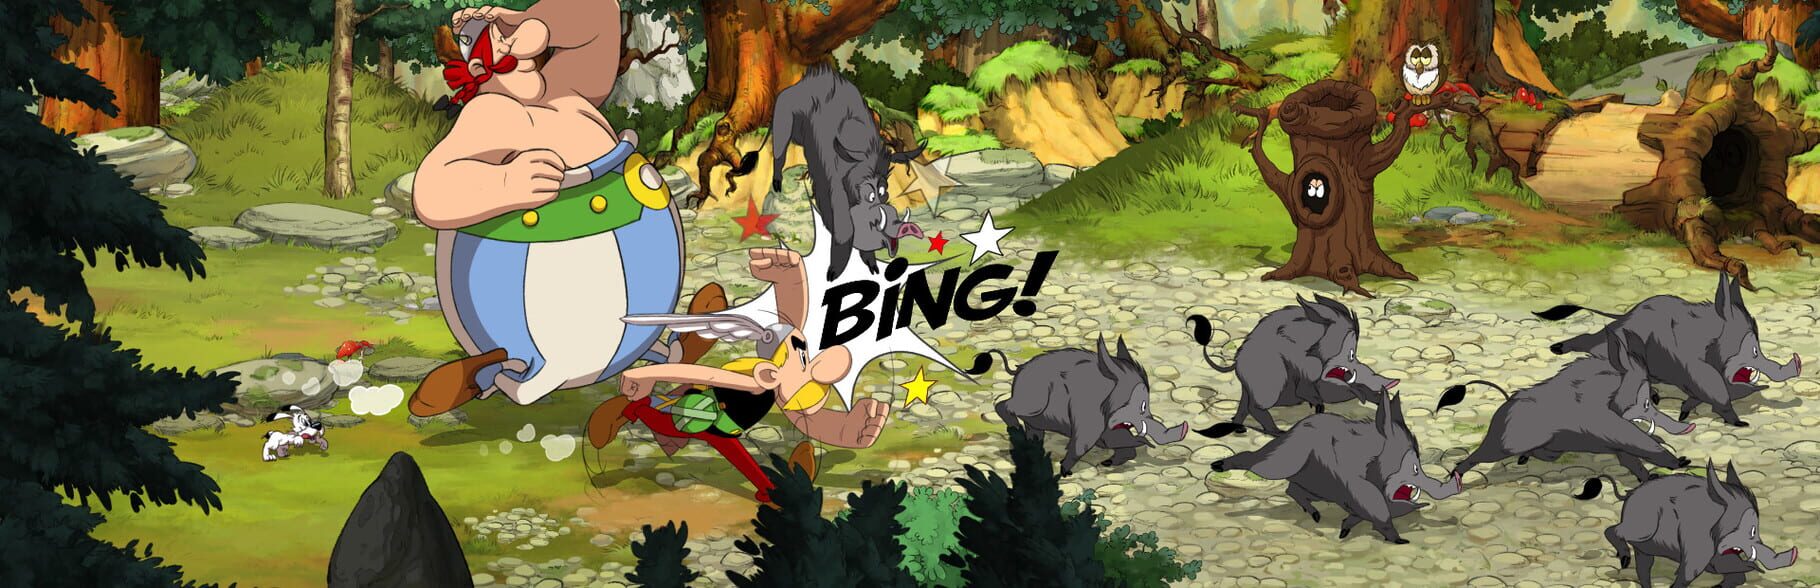 Asterix & Obelix: Slap Them All! artwork